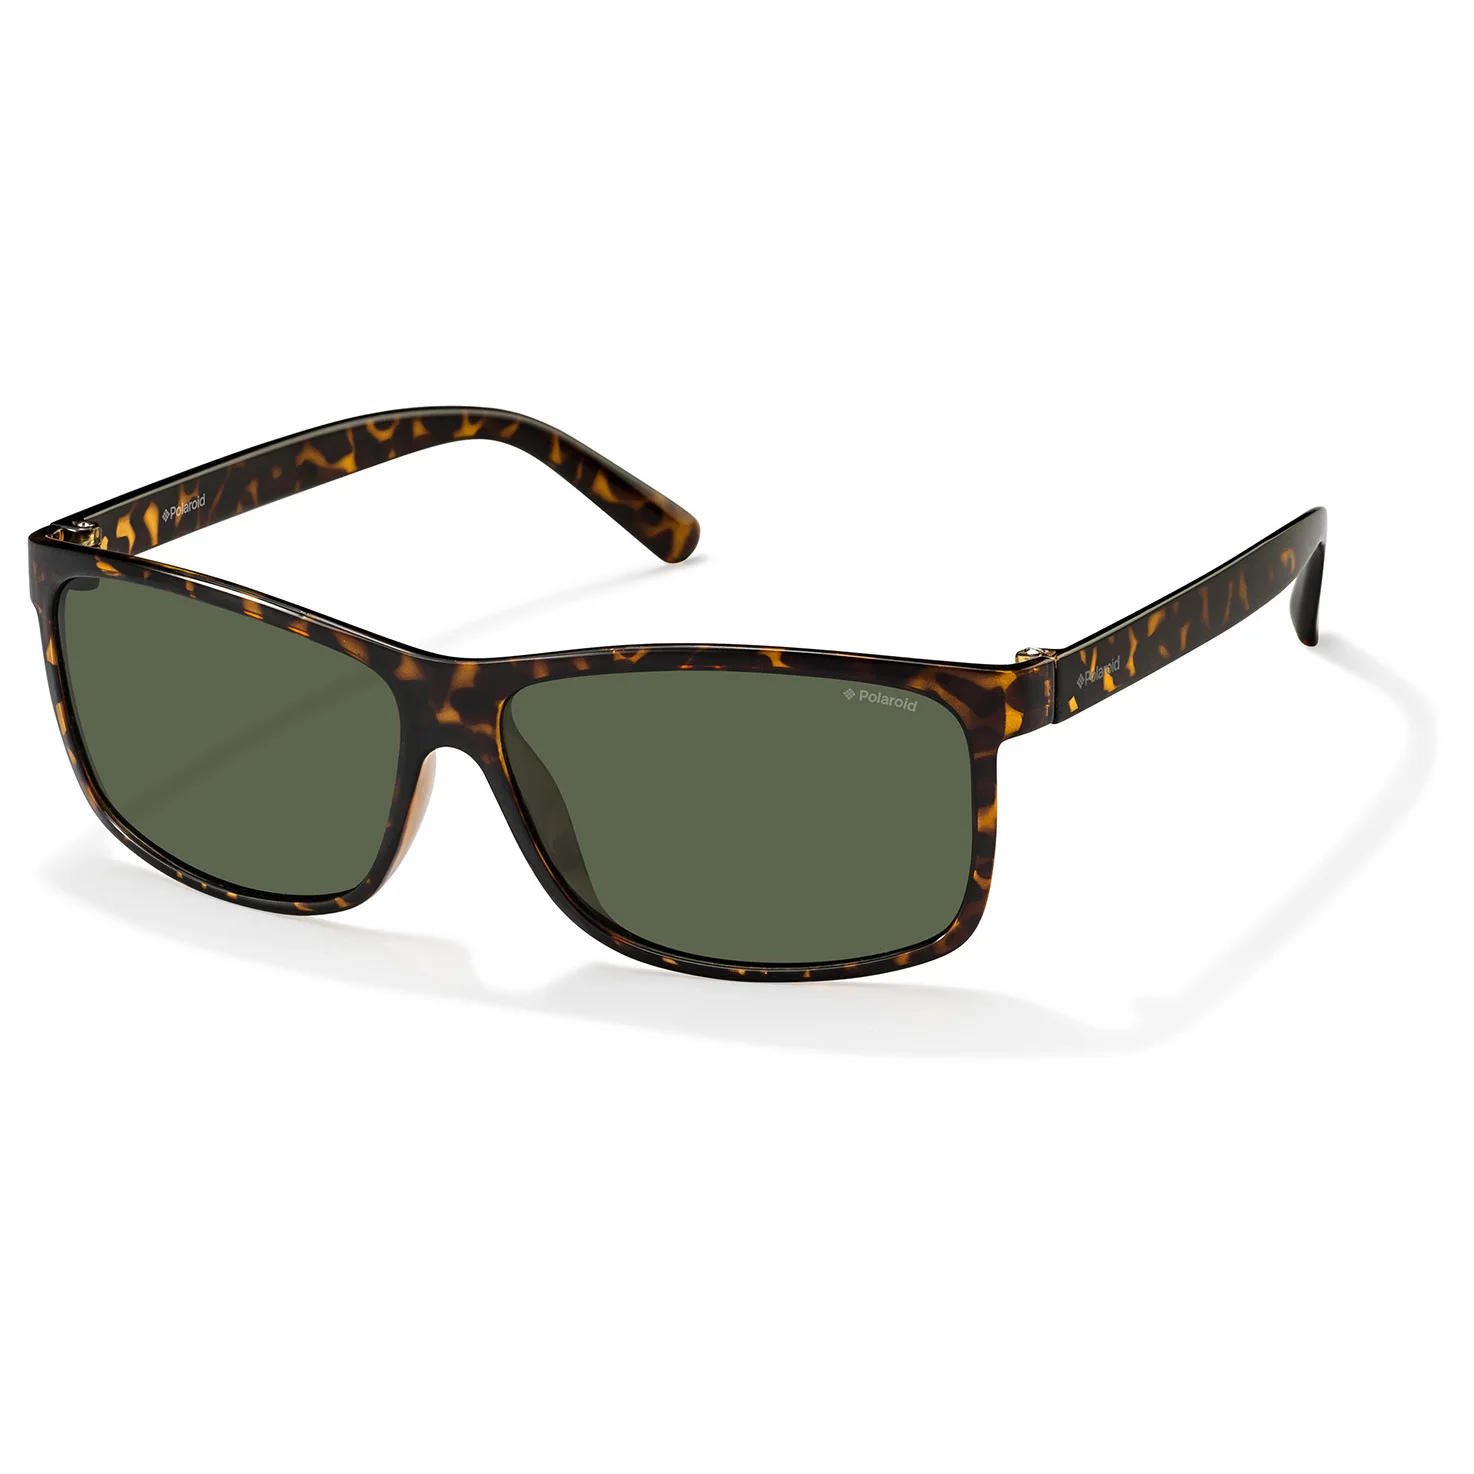 Солнцезащитные очки Polaroid солнечные PLD 3010.S.V08.H8 | Аксессуары для одежды